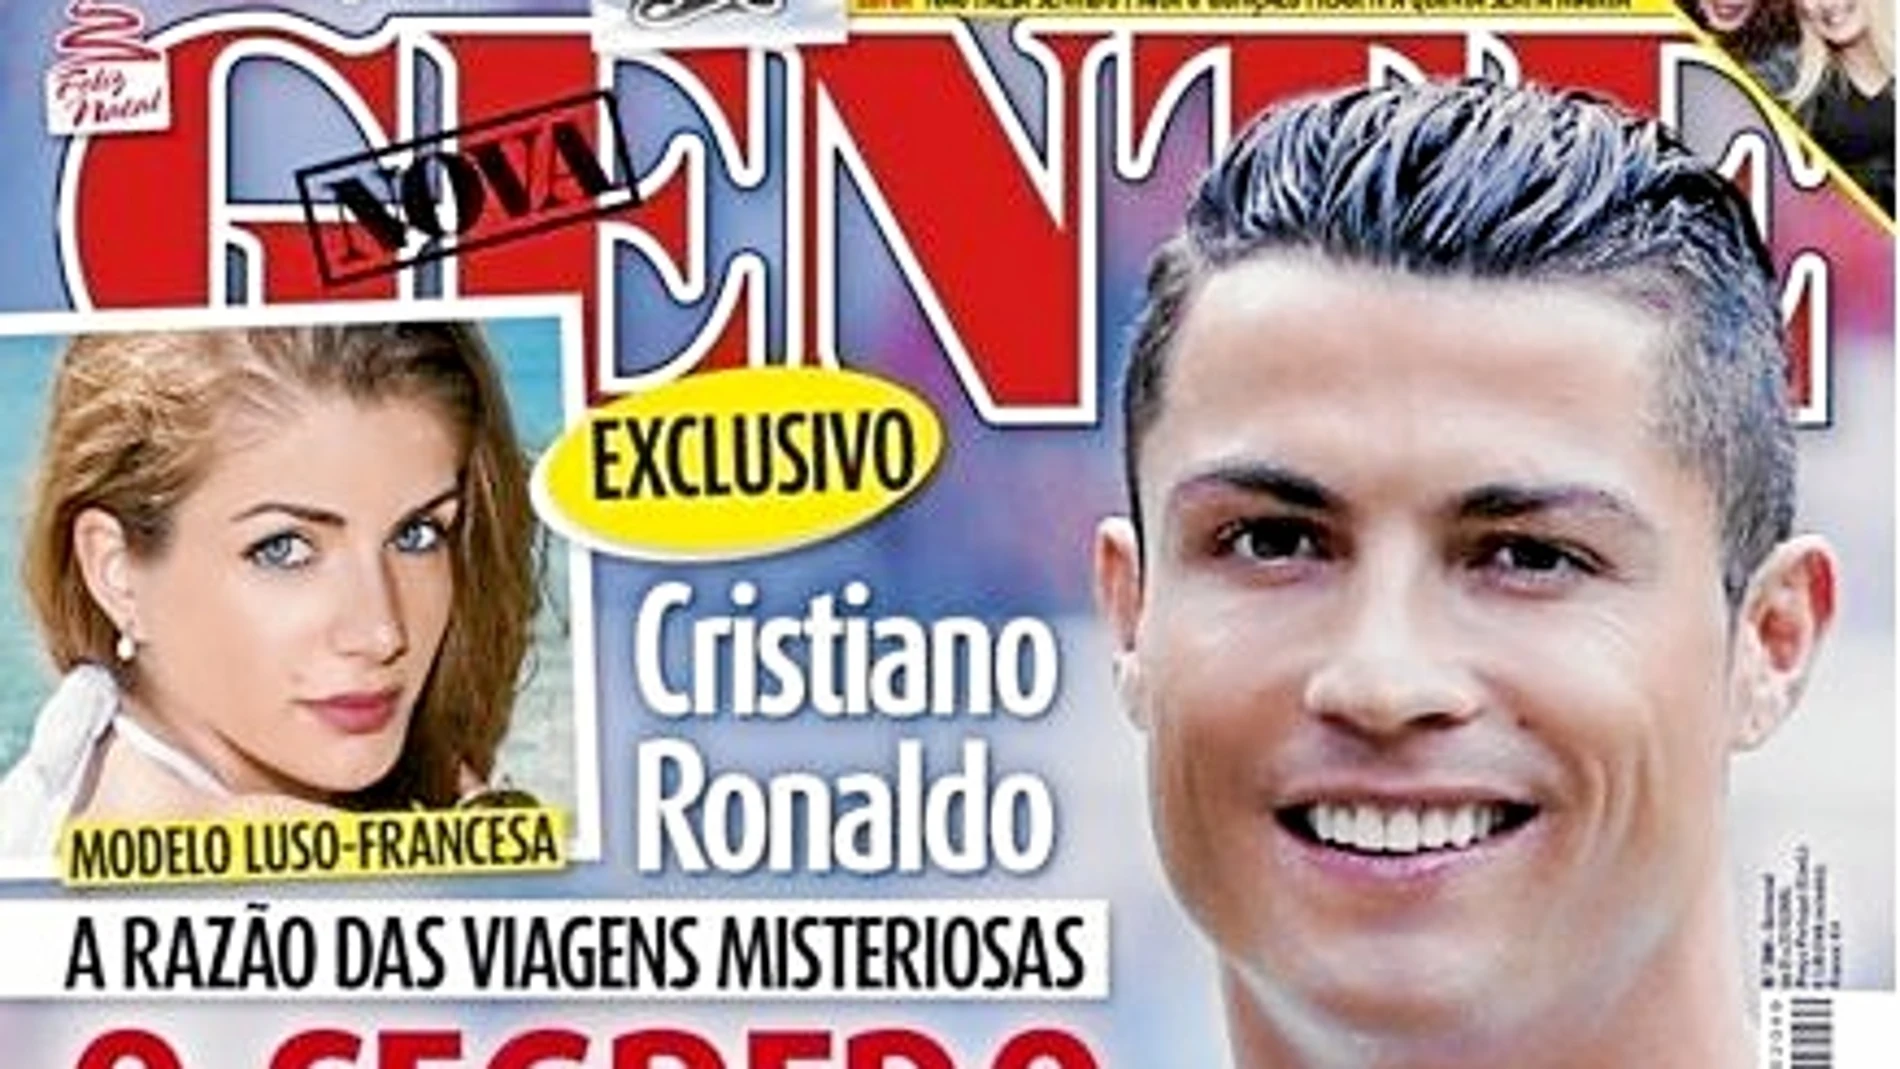 La portada de la revista «Nova Gente» que desvela el supuesto romance entre Martins y Cristiano Ronaldo